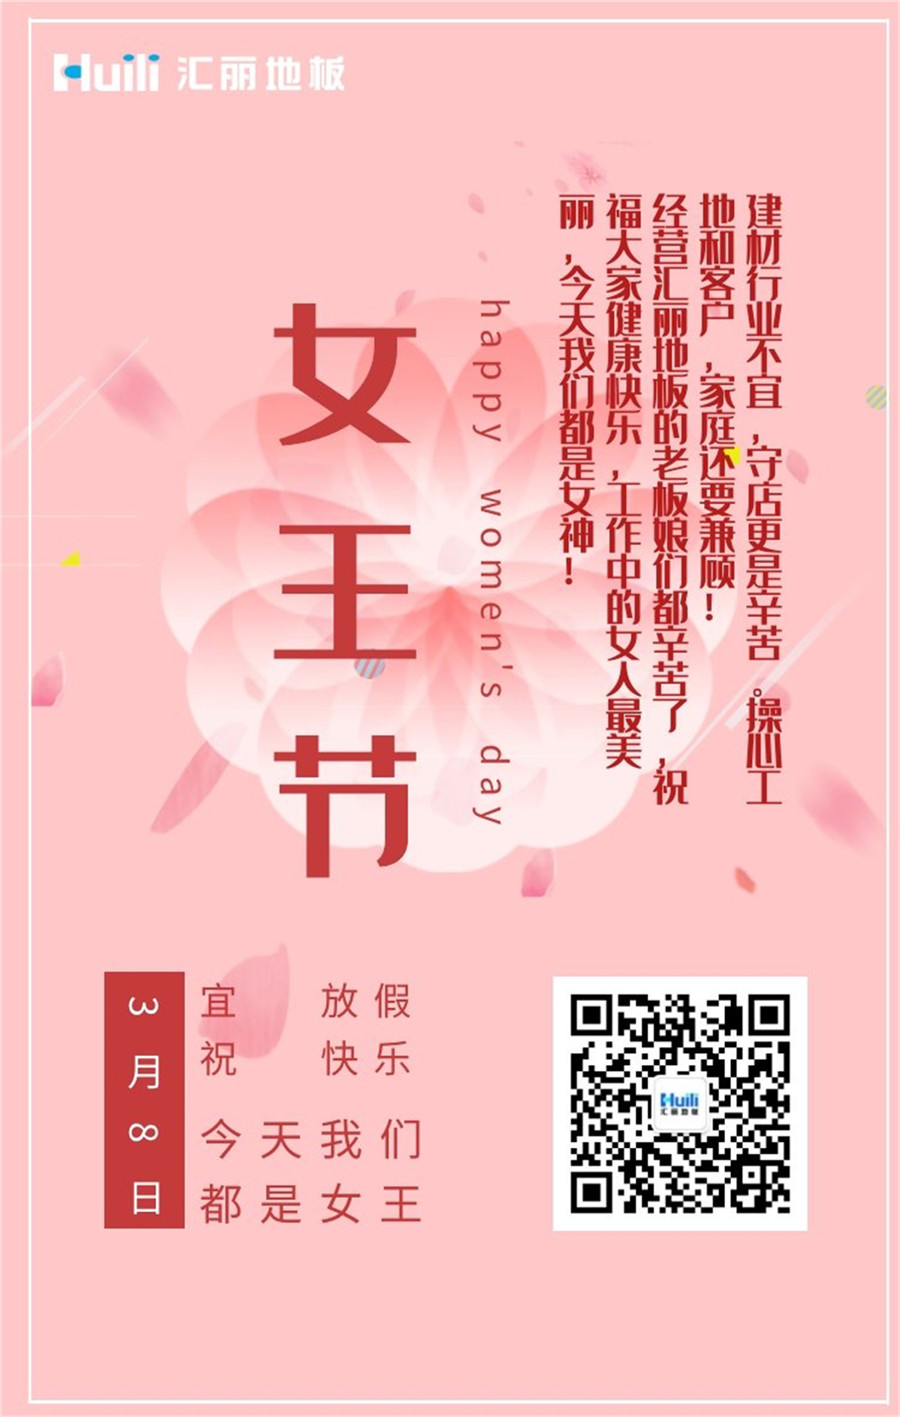 4-企业文化篇2019年妇女节.jpg